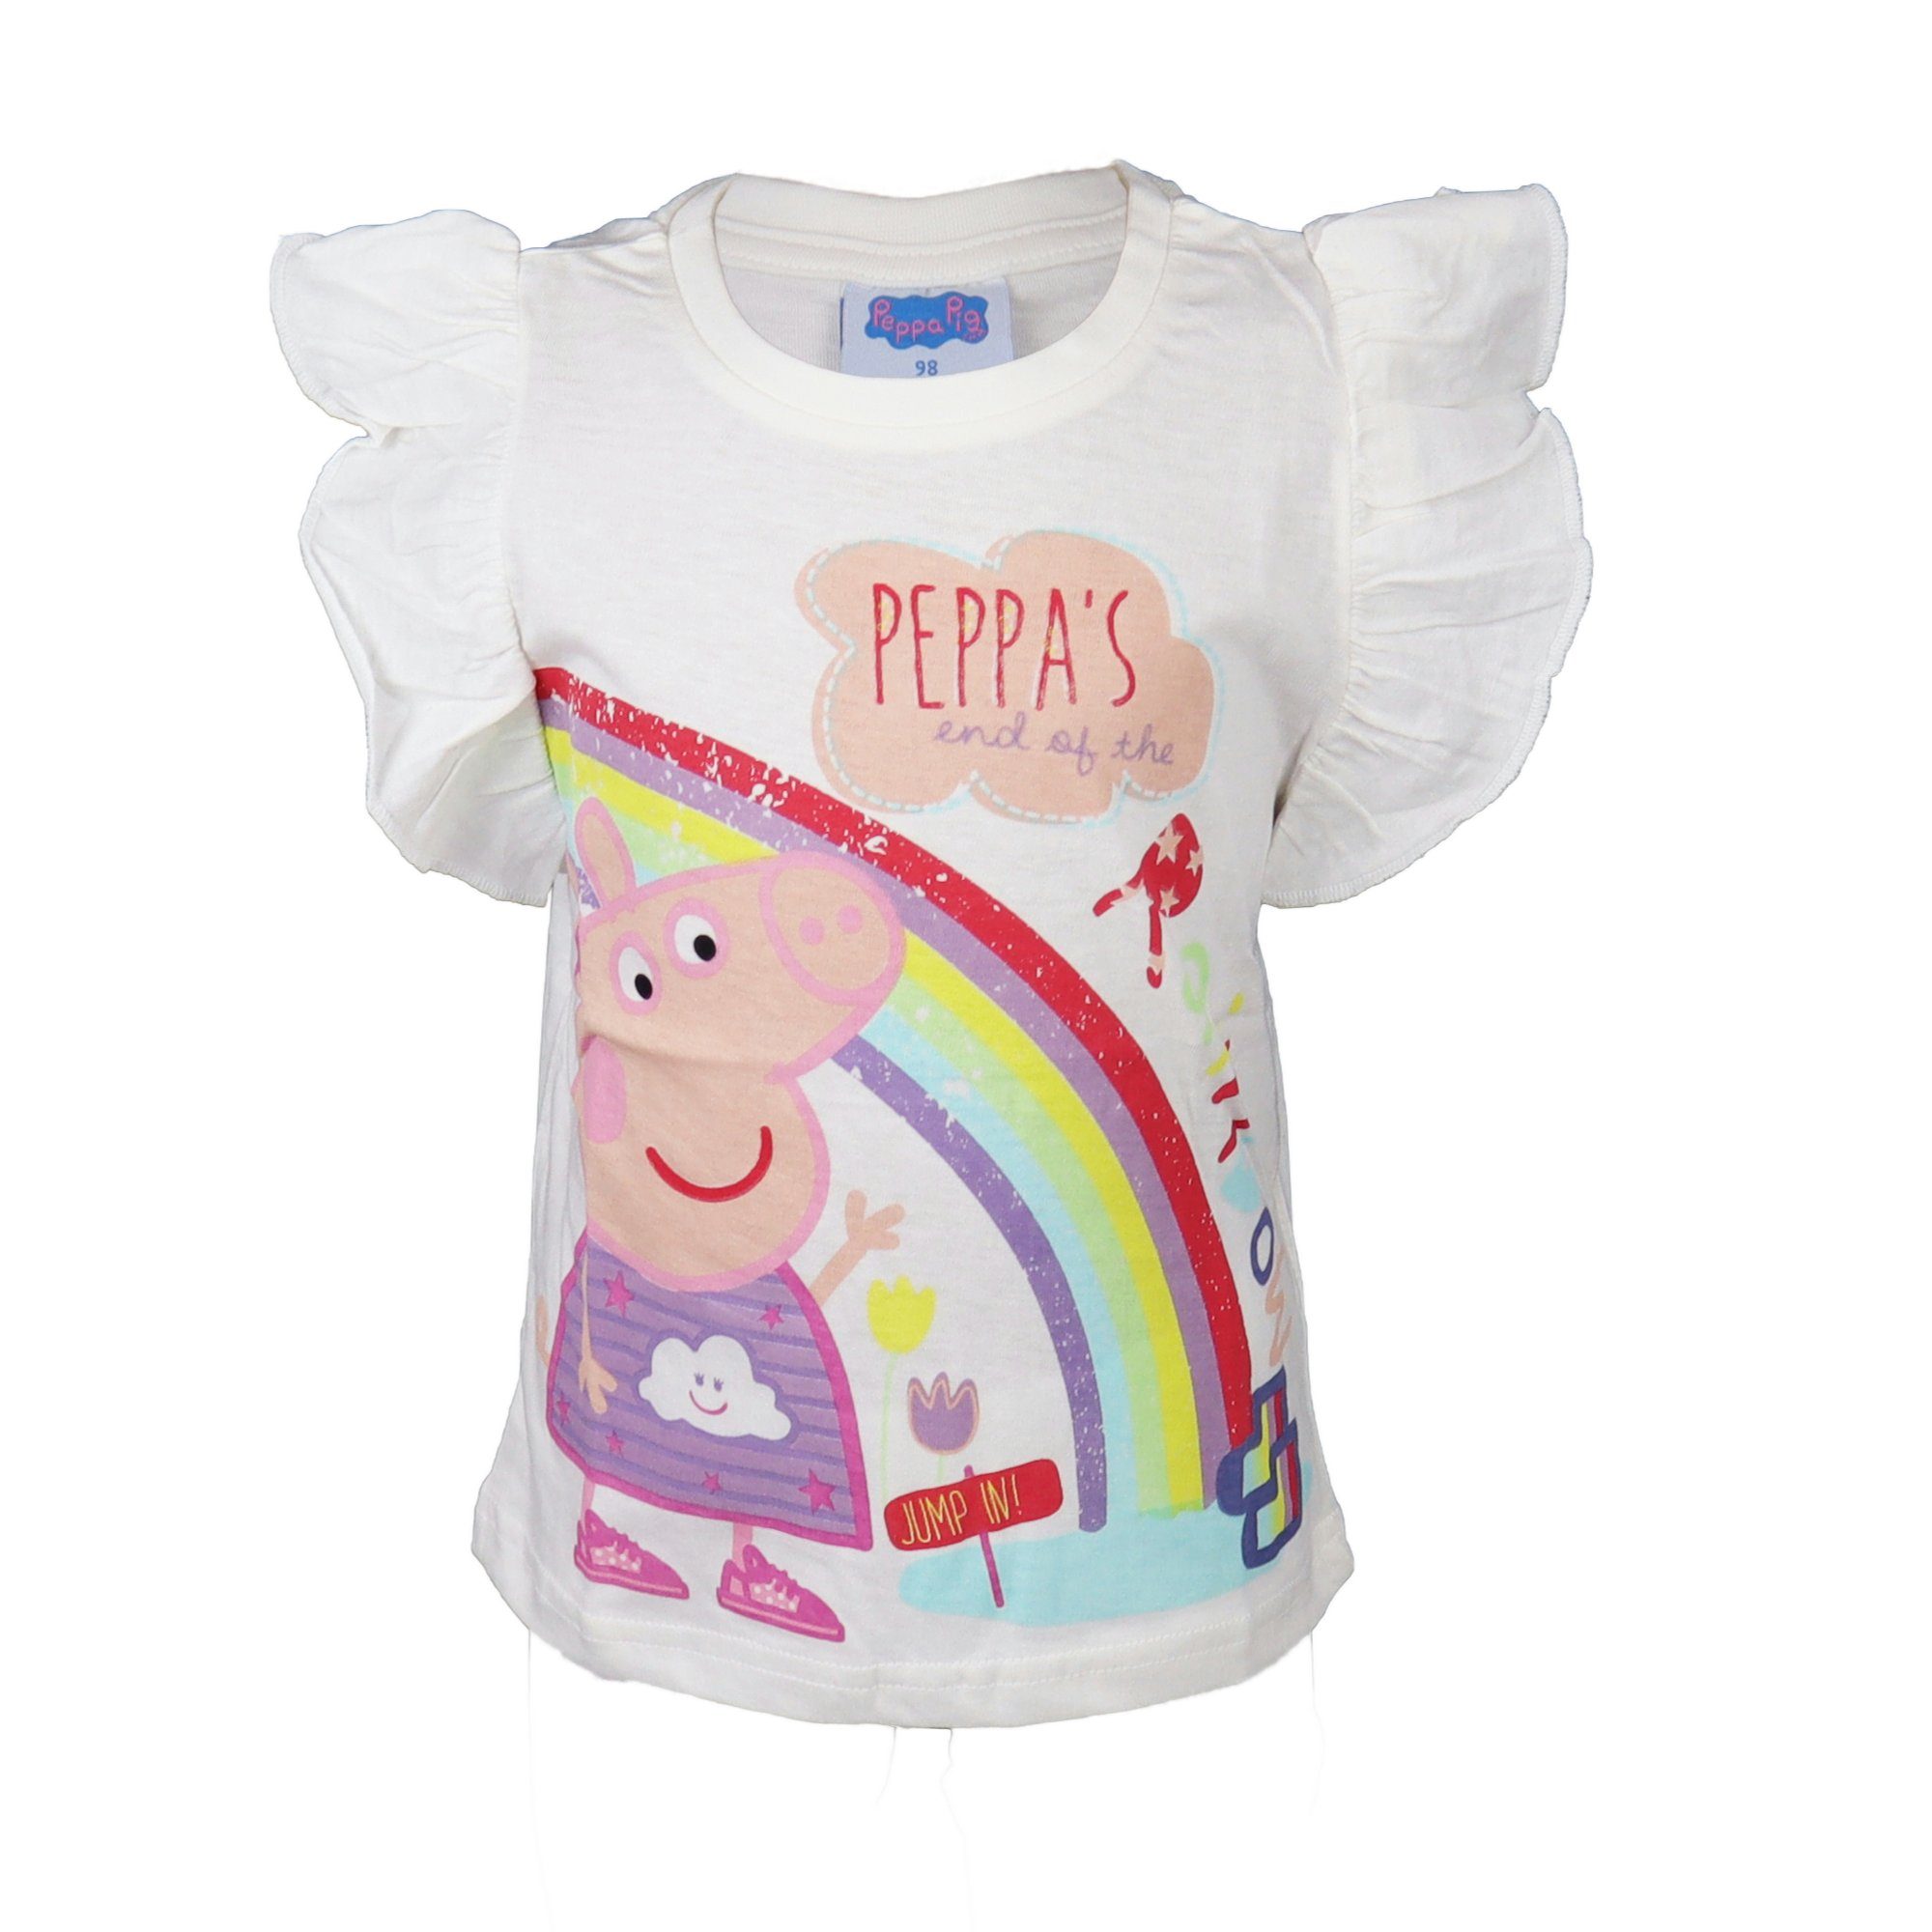 Peppa Pig T-Shirt Wutz Kinder 92 116, 100% Weiß bis Shirt Baumwolle Gr